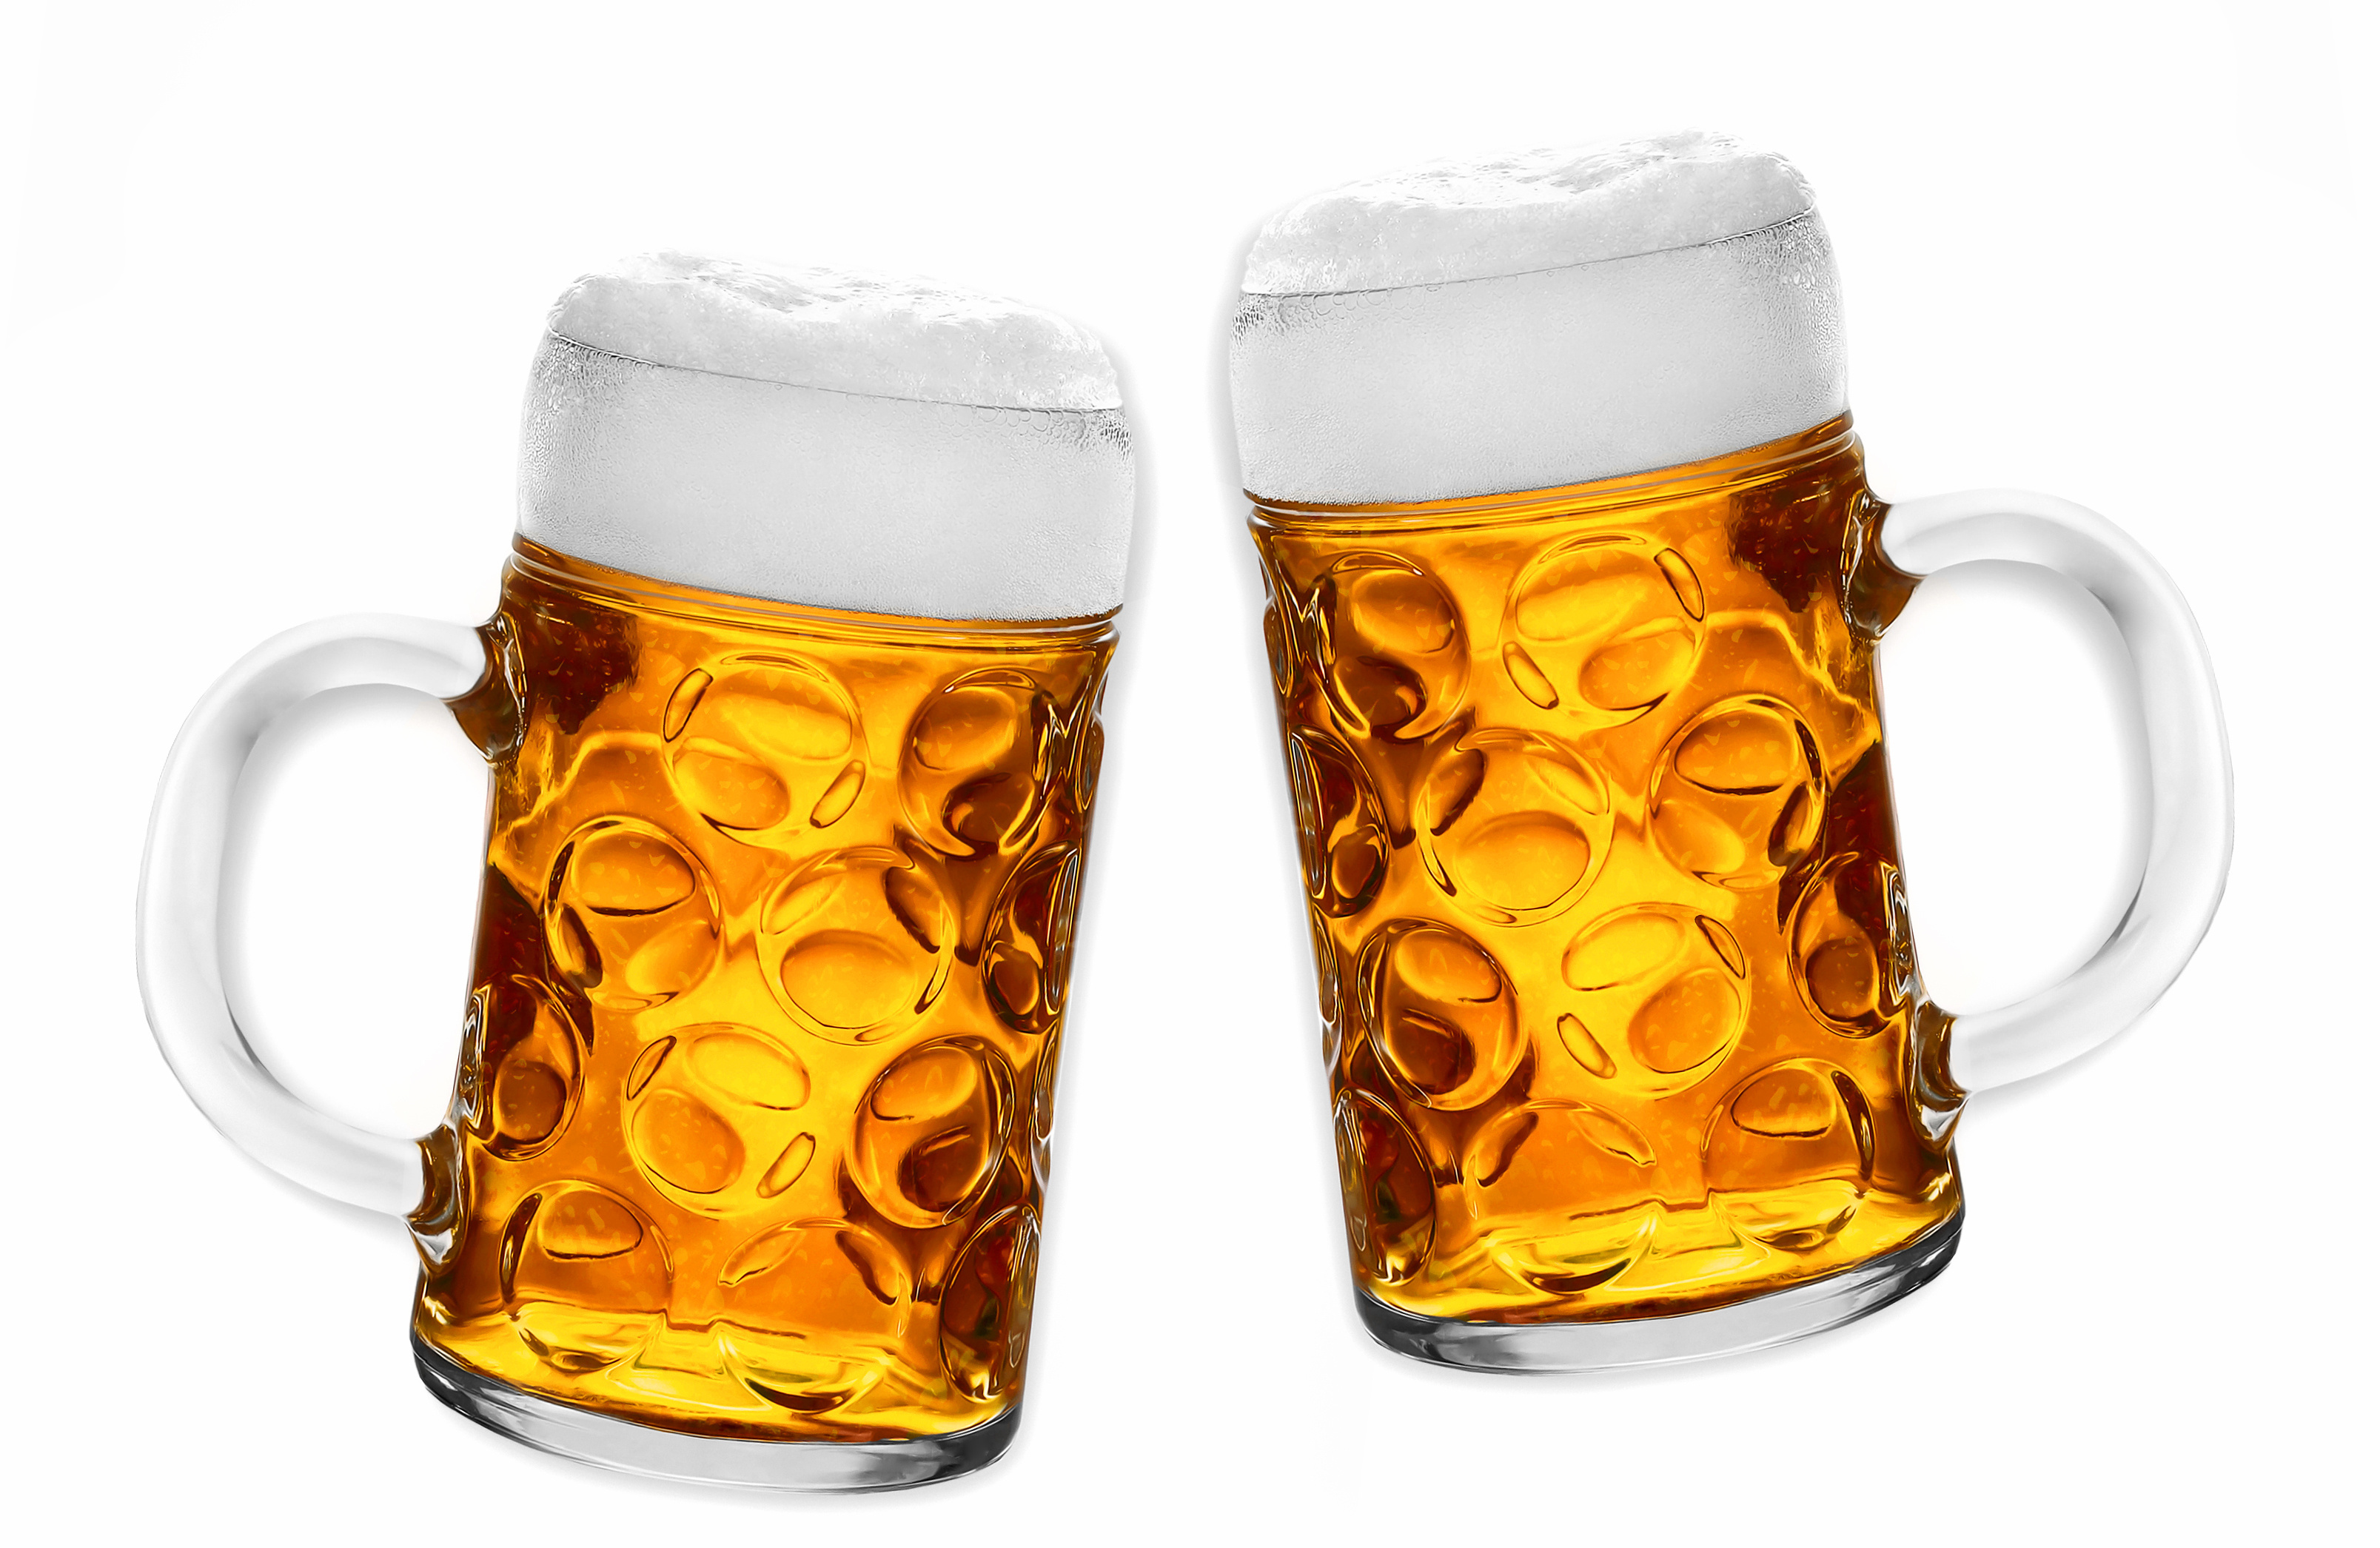 Η θρεπτική αξία της μπύρας